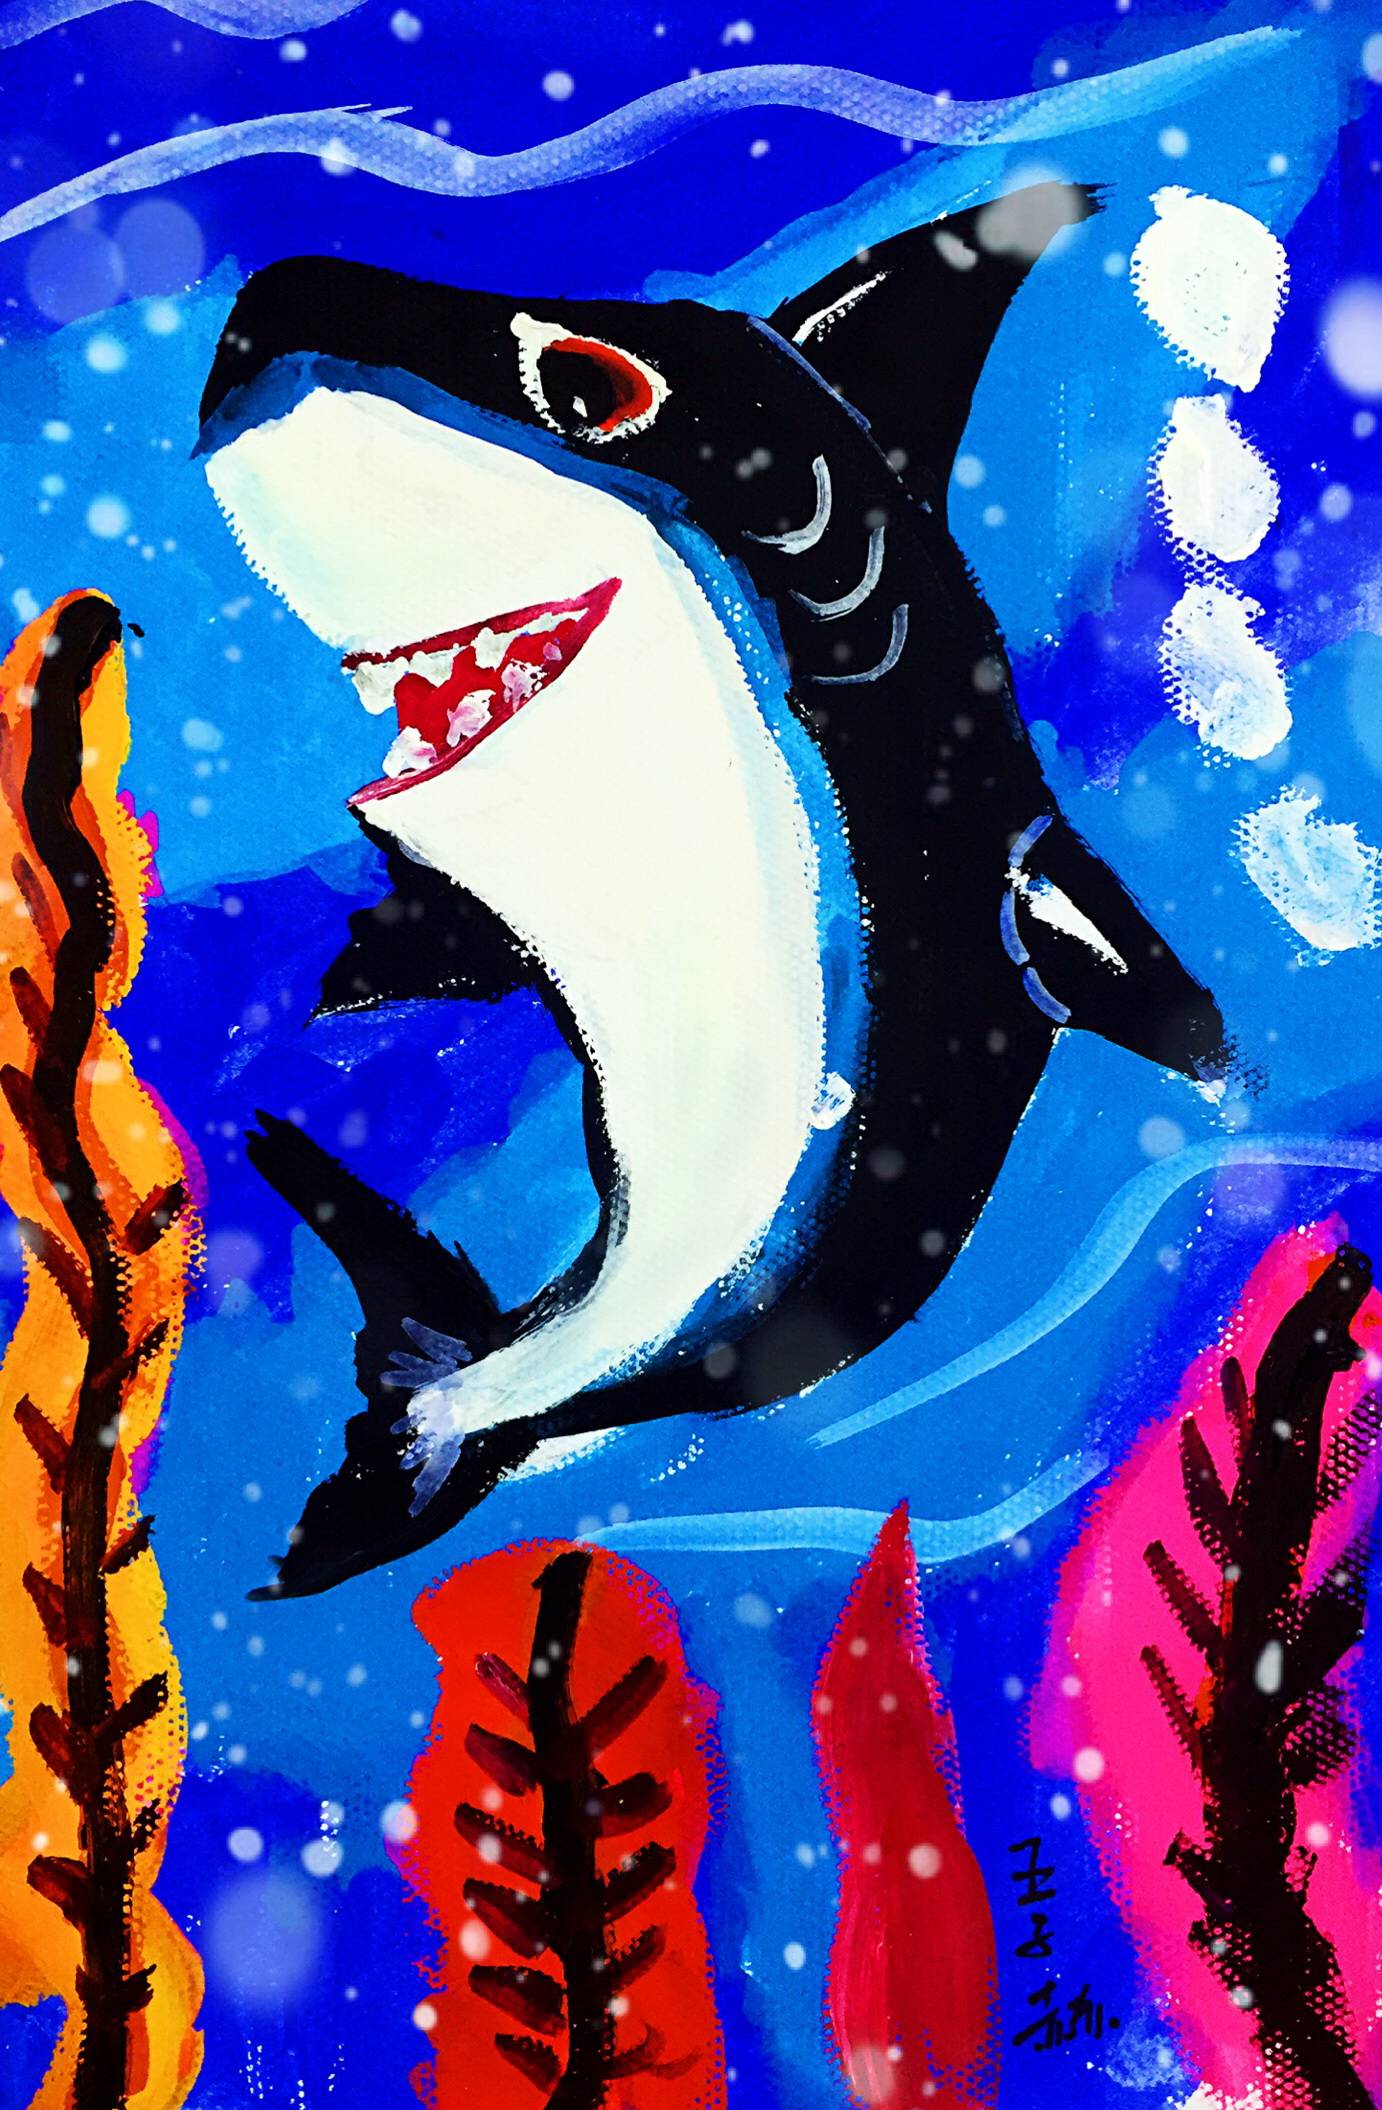 少儿书画大赛:海底世界儿童画,小朋友的亚特兰蒂斯是什么样的?